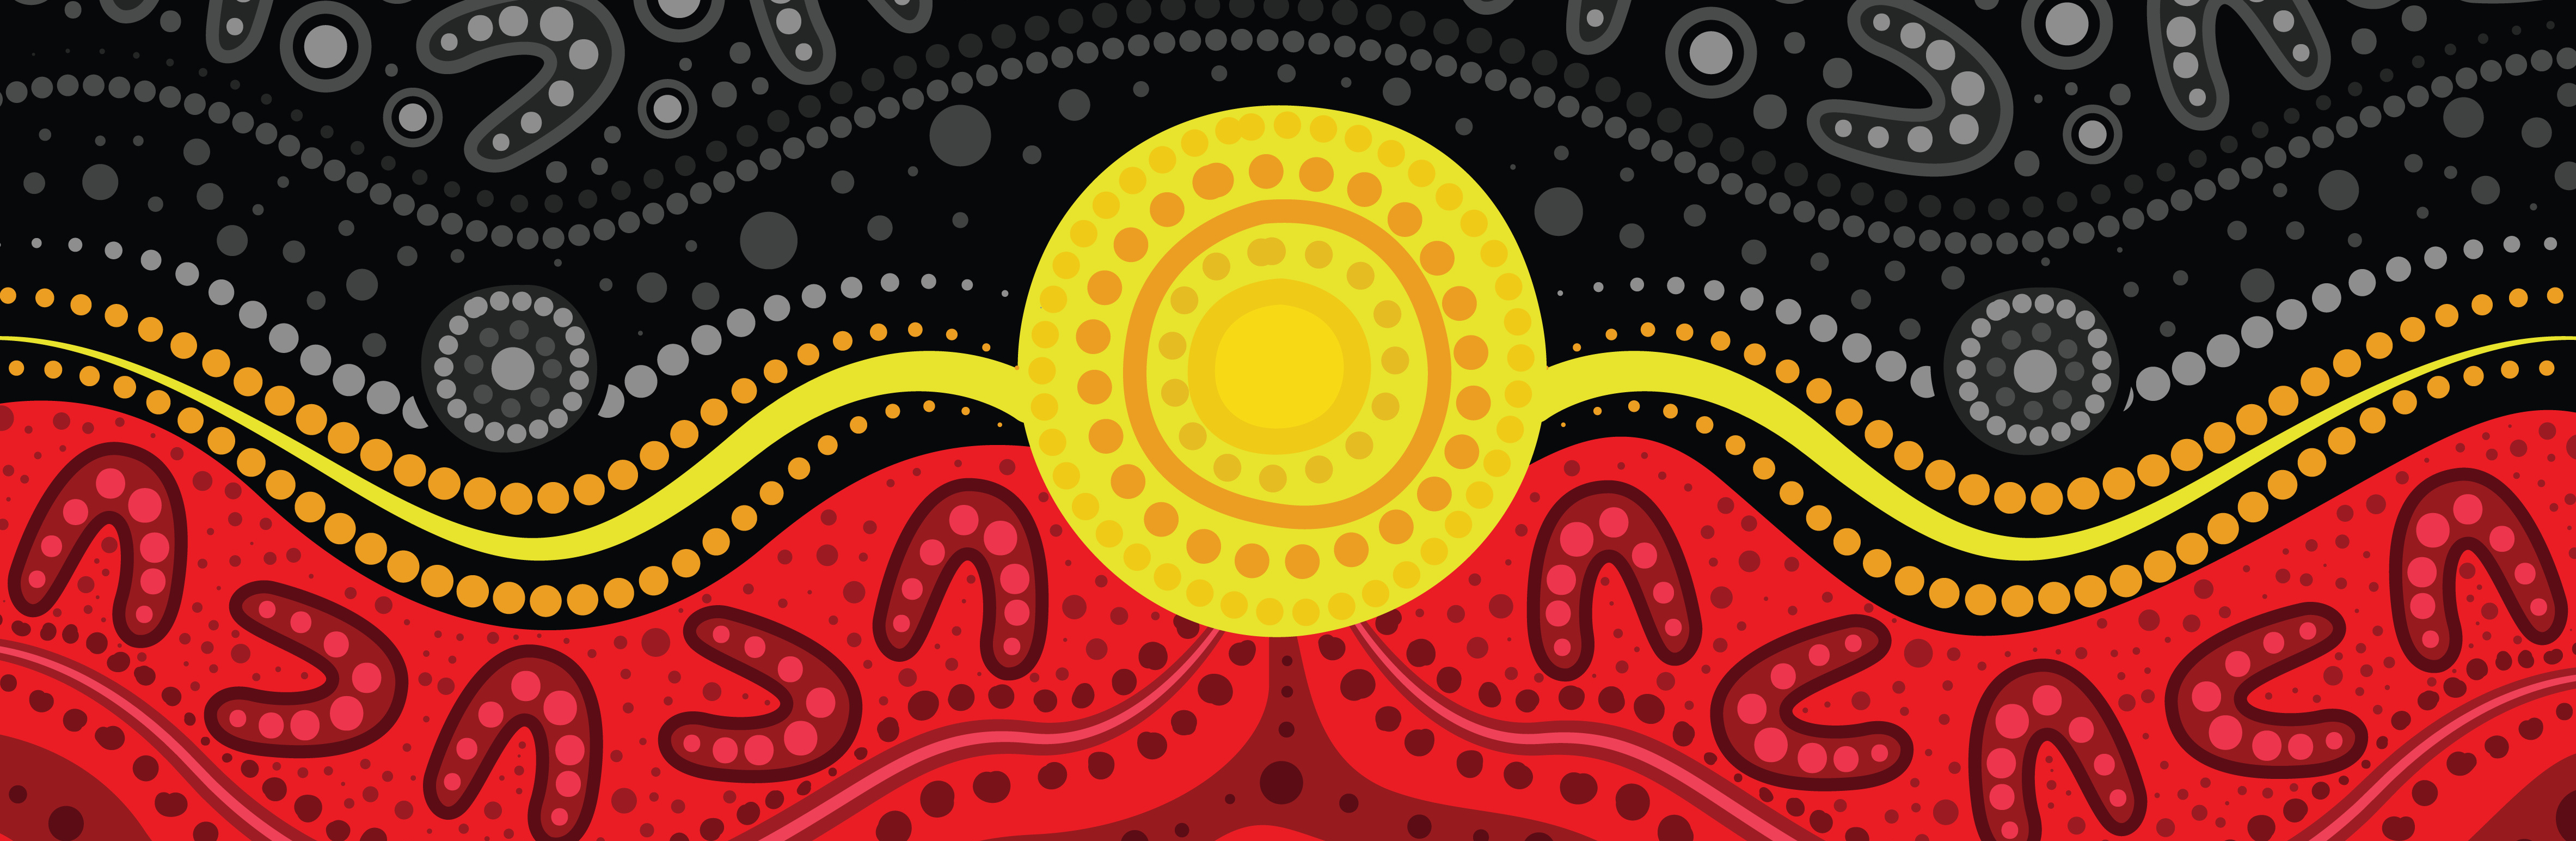 AboriginalFlag.jpeg